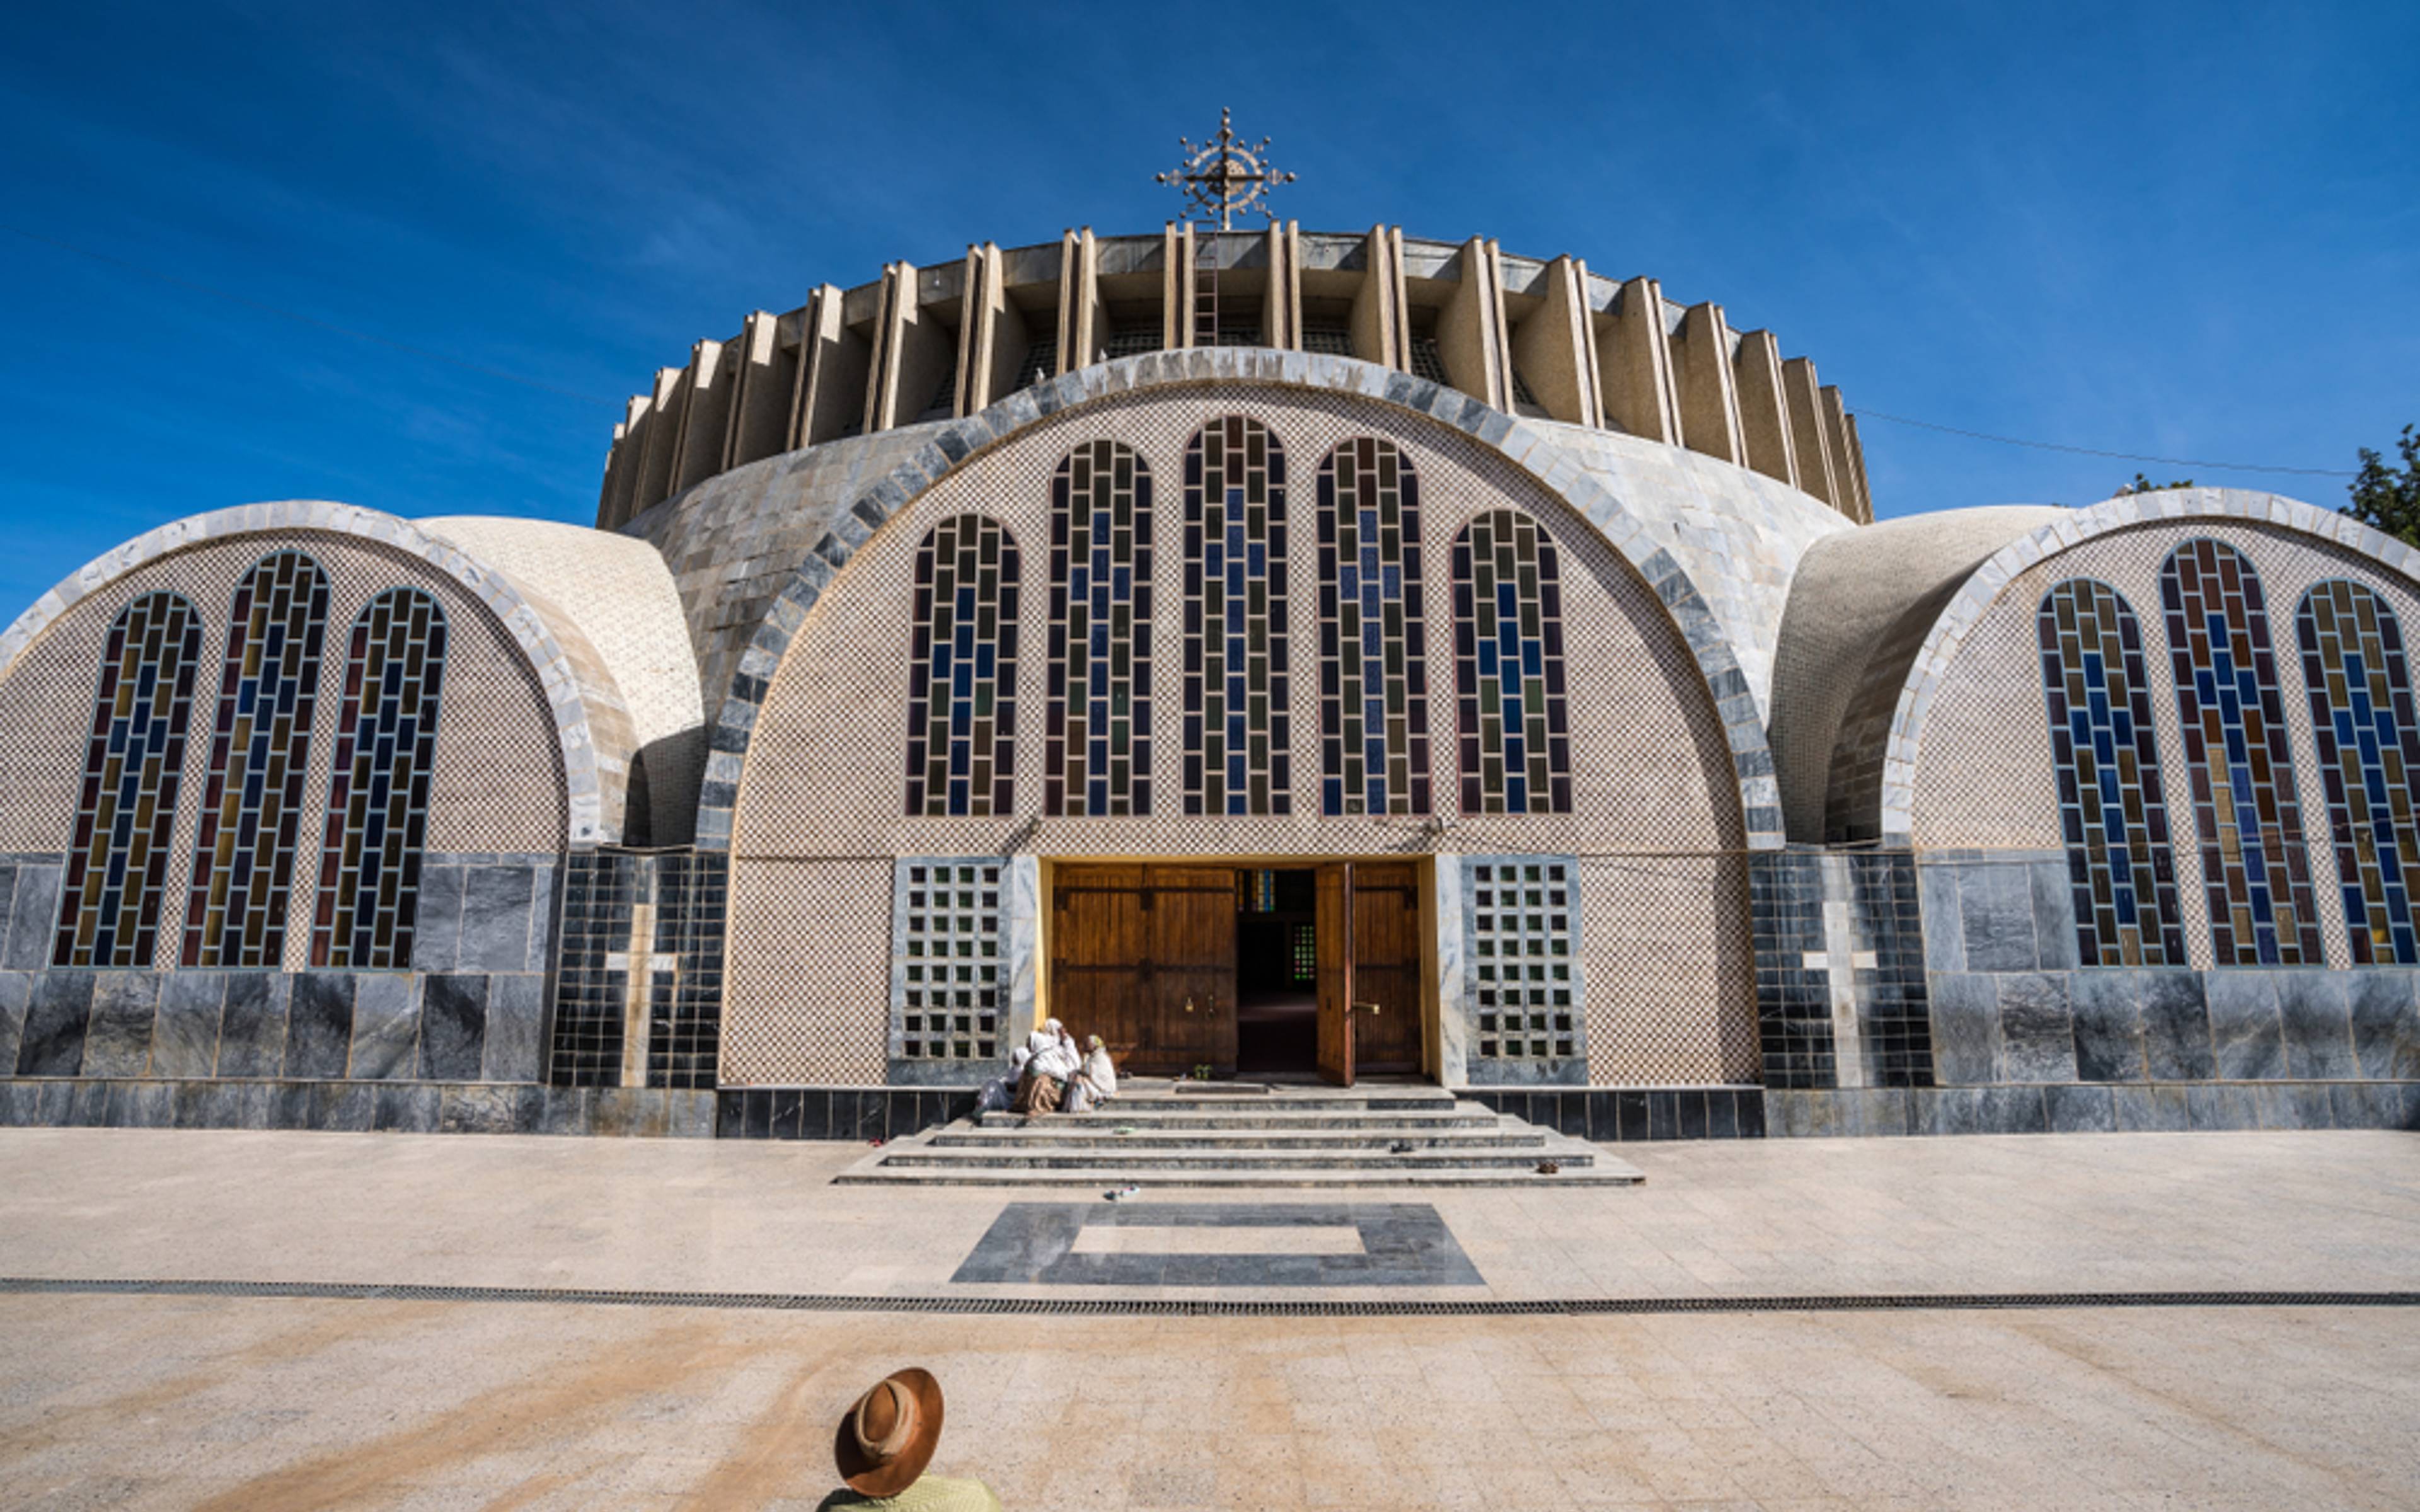 Axum, visita al "Parque de las Estelas" y las iglesias de Zion